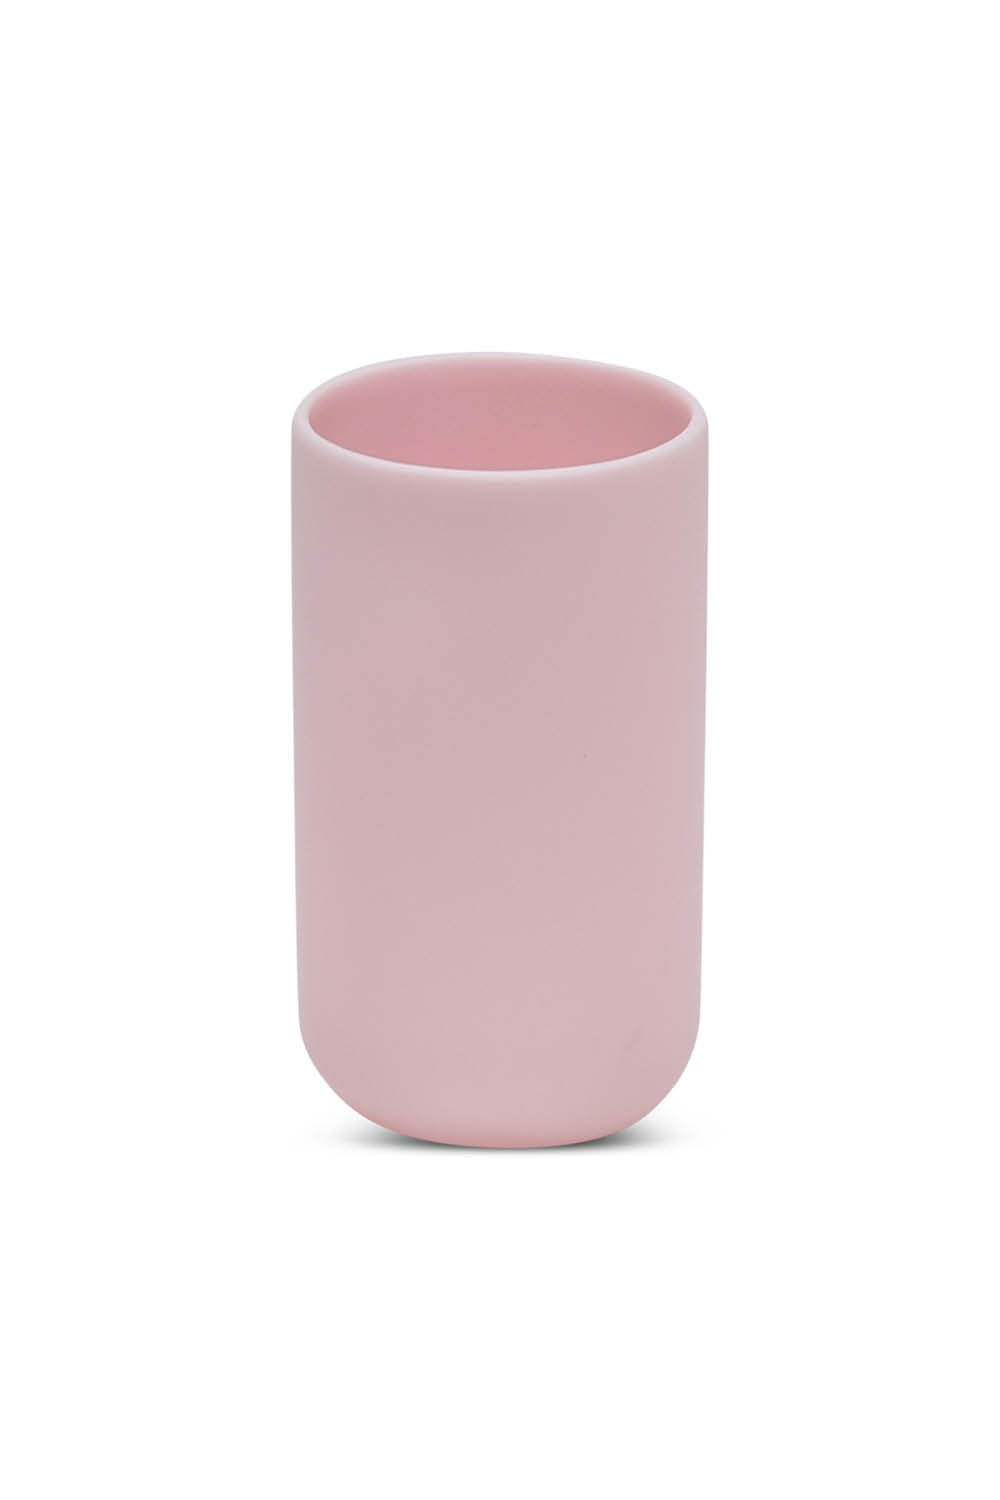 MODERN Cylinder Vase in Pale Rose